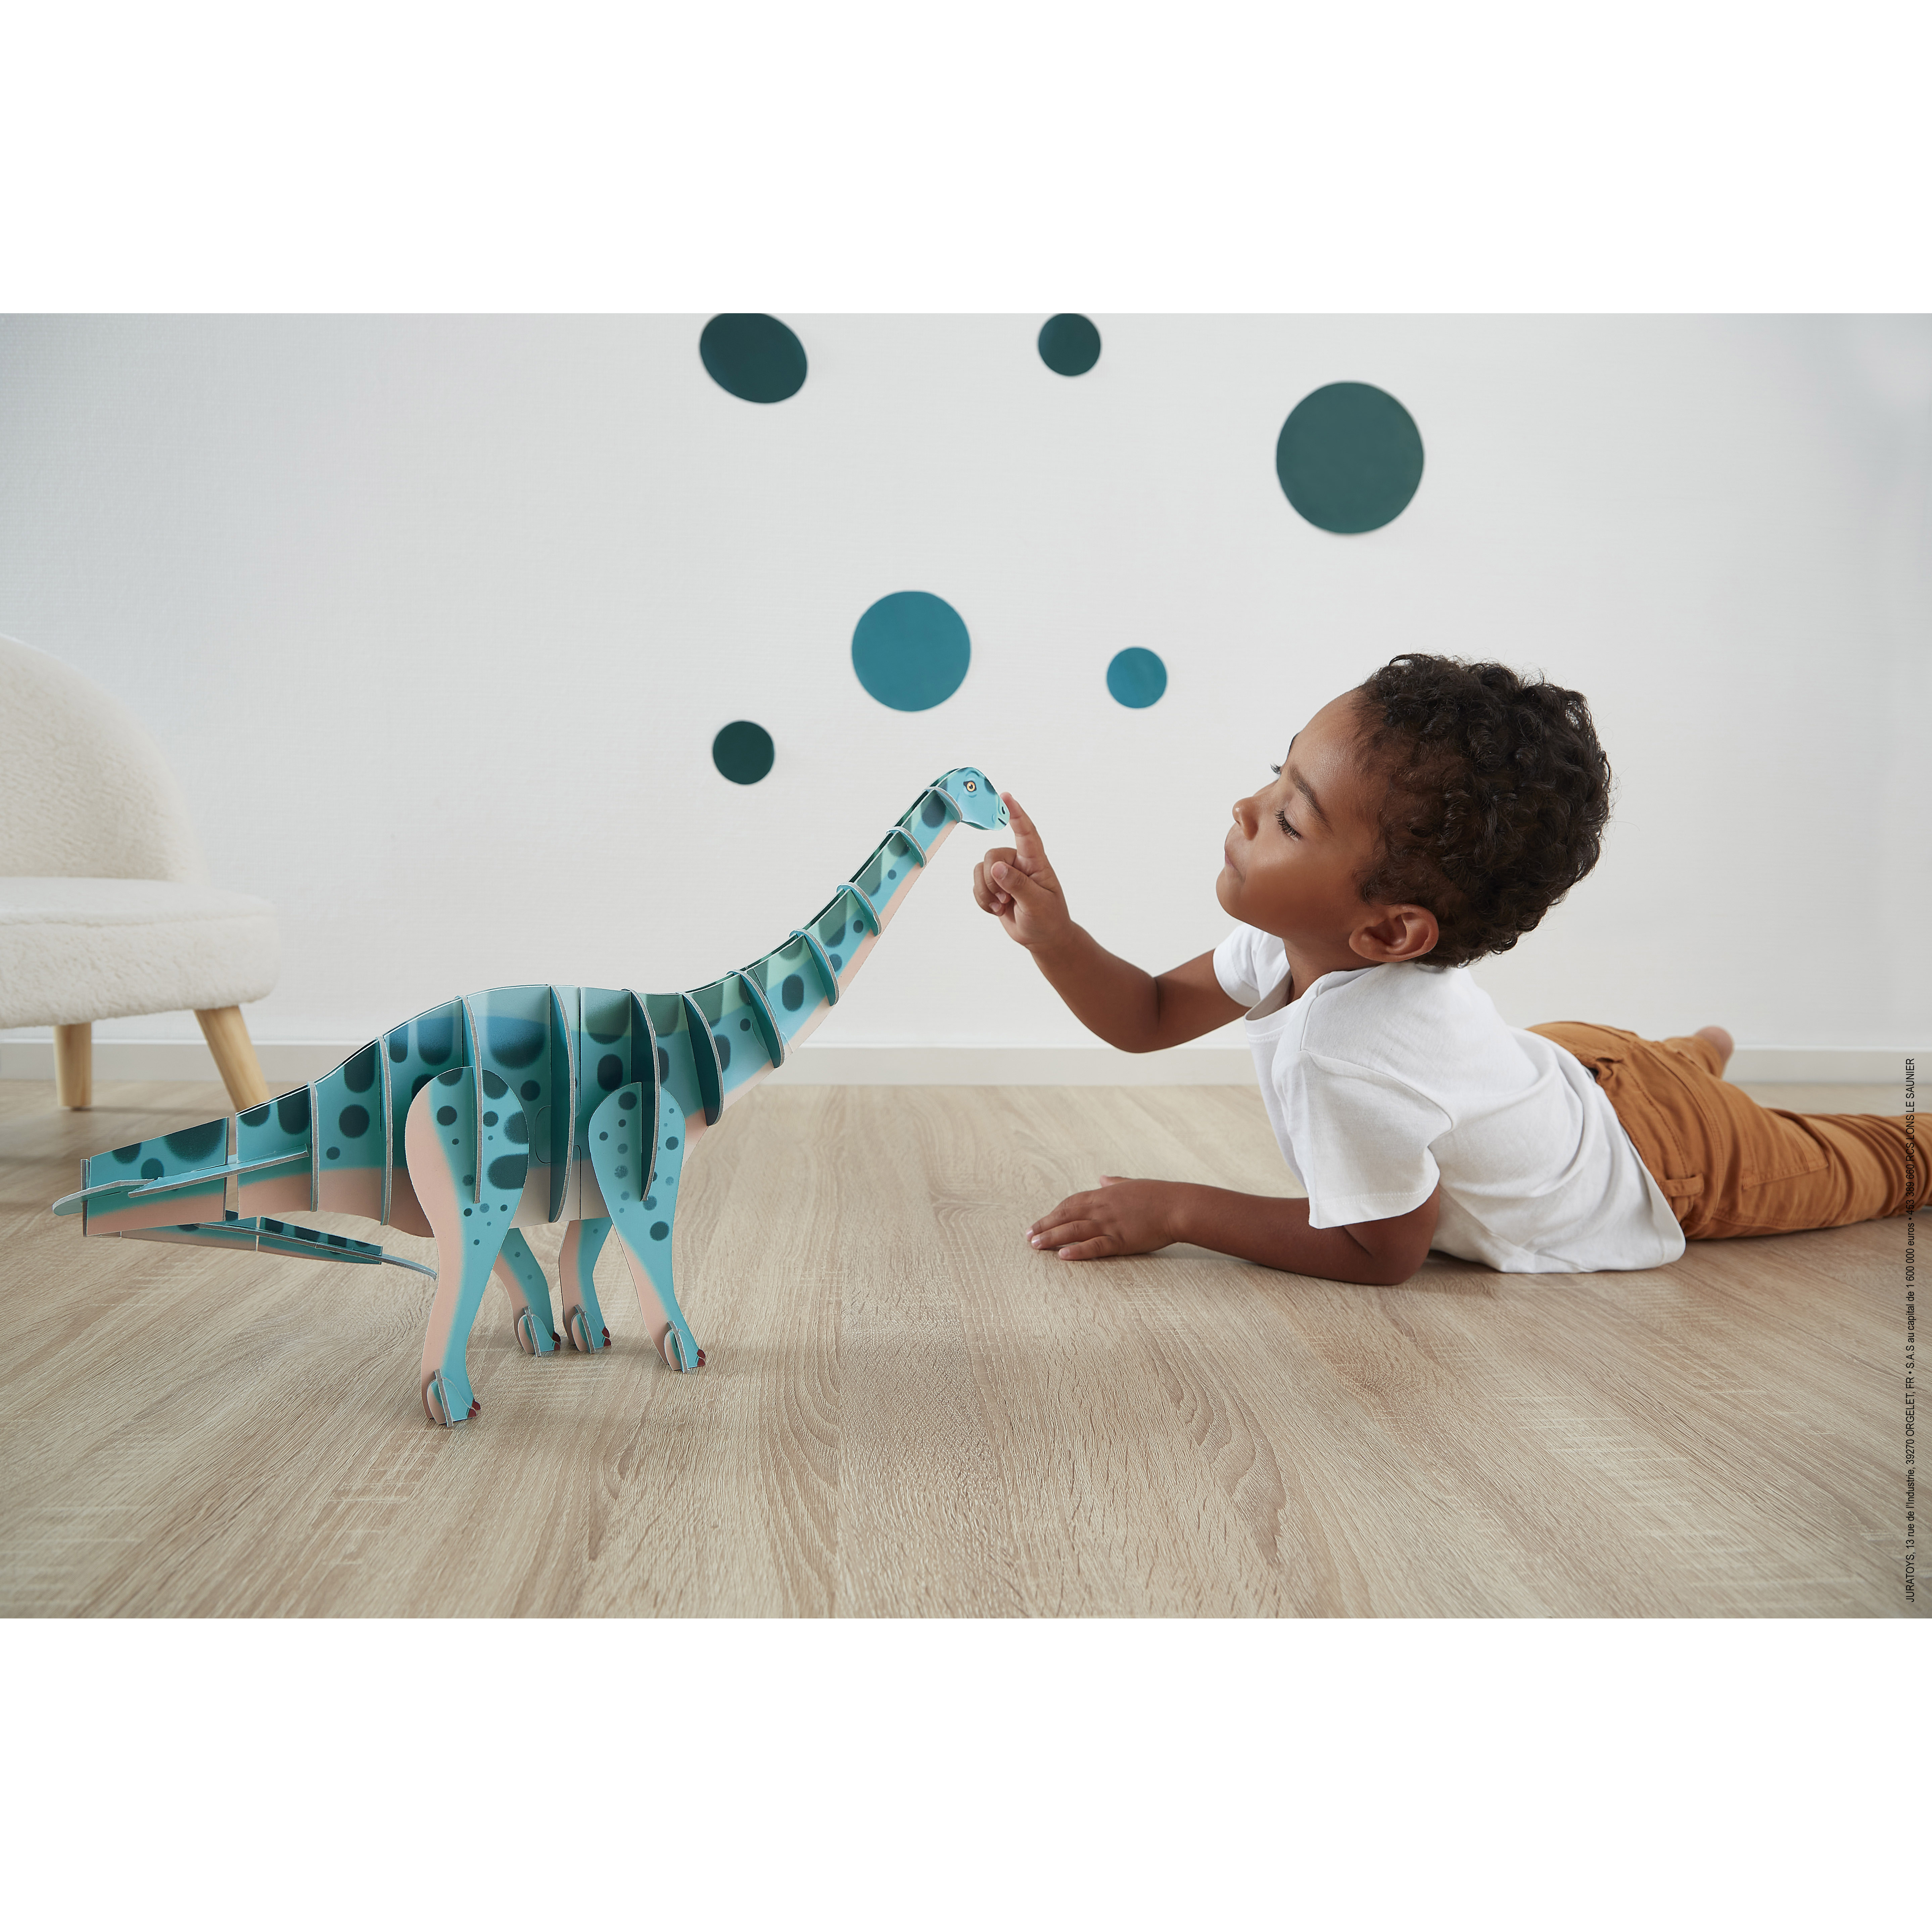 Puzzle dinosaure Dino-Delight - Le T rex francais